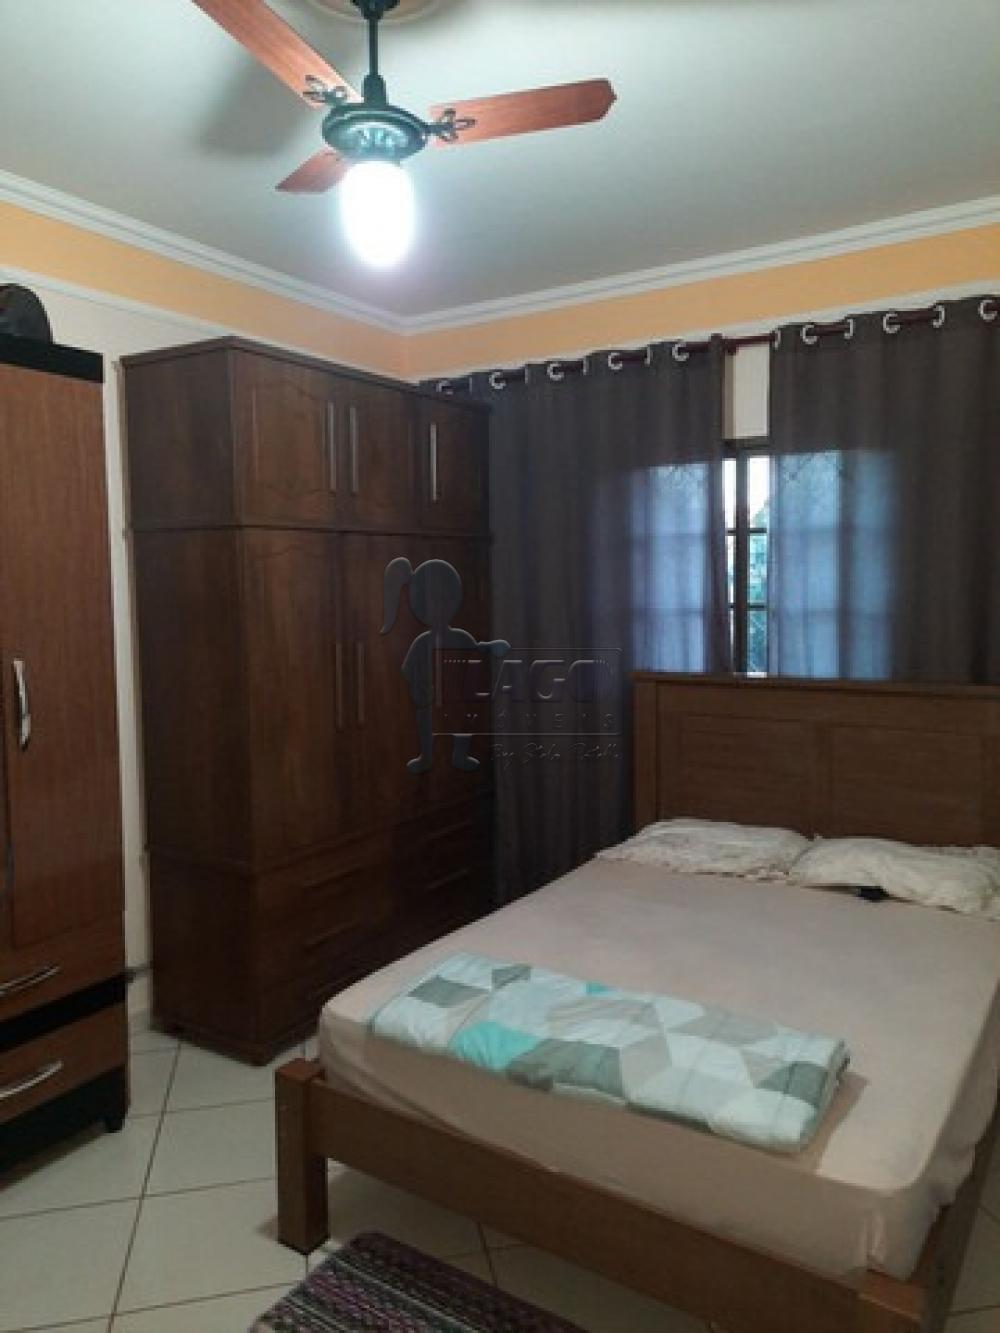 Comprar Casas / Padrão em Ribeirão Preto R$ 215.000,00 - Foto 7